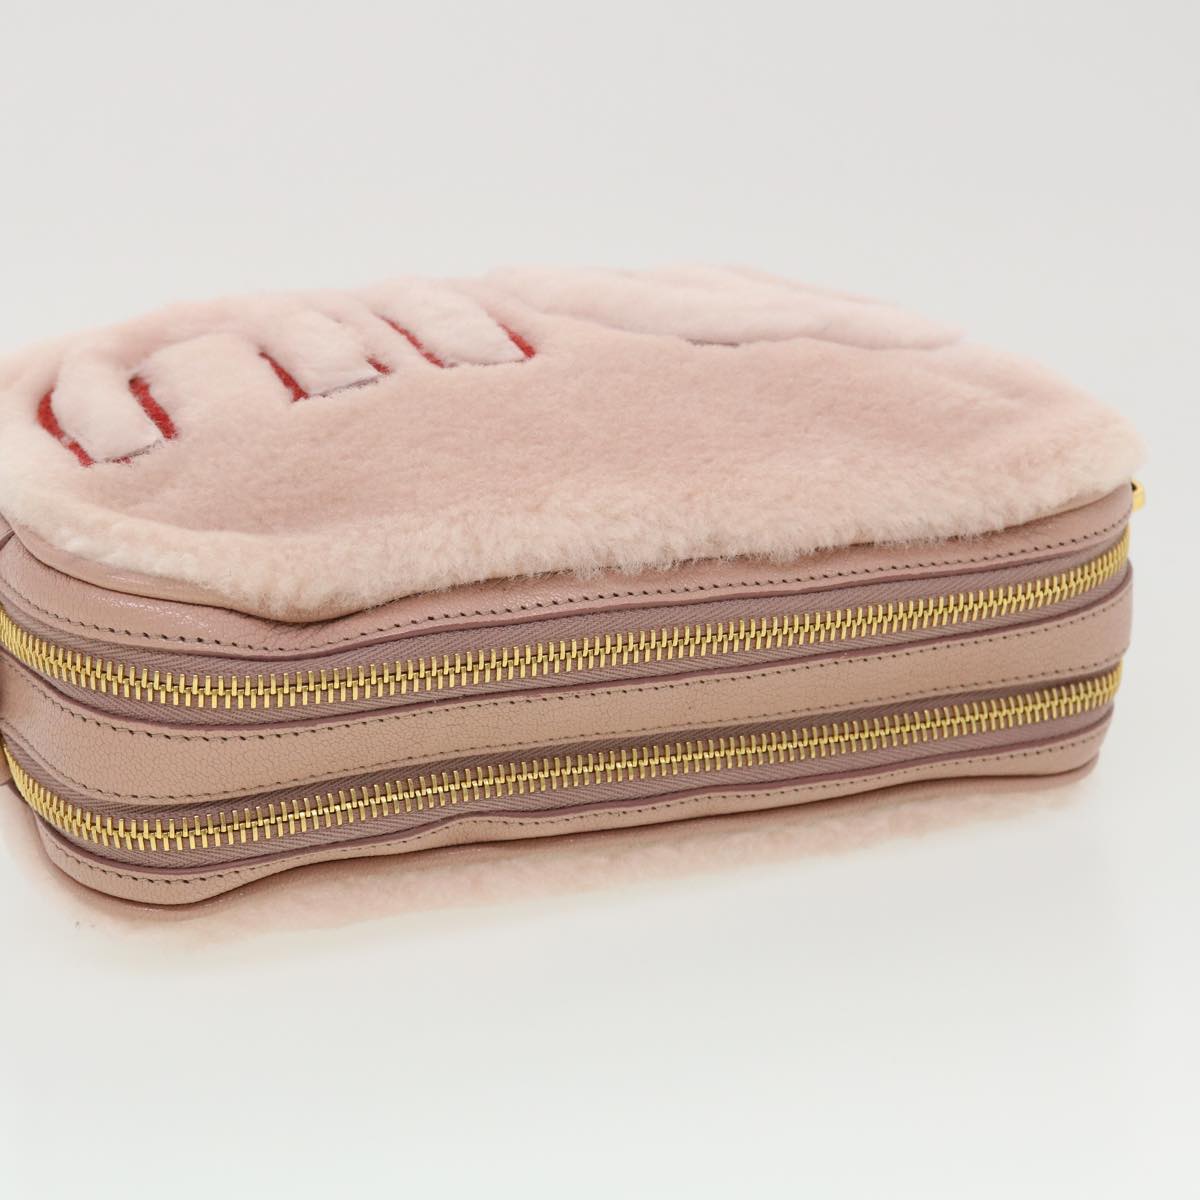 Miu Miu Shoulder Bag Fur Pink Auth 42823a